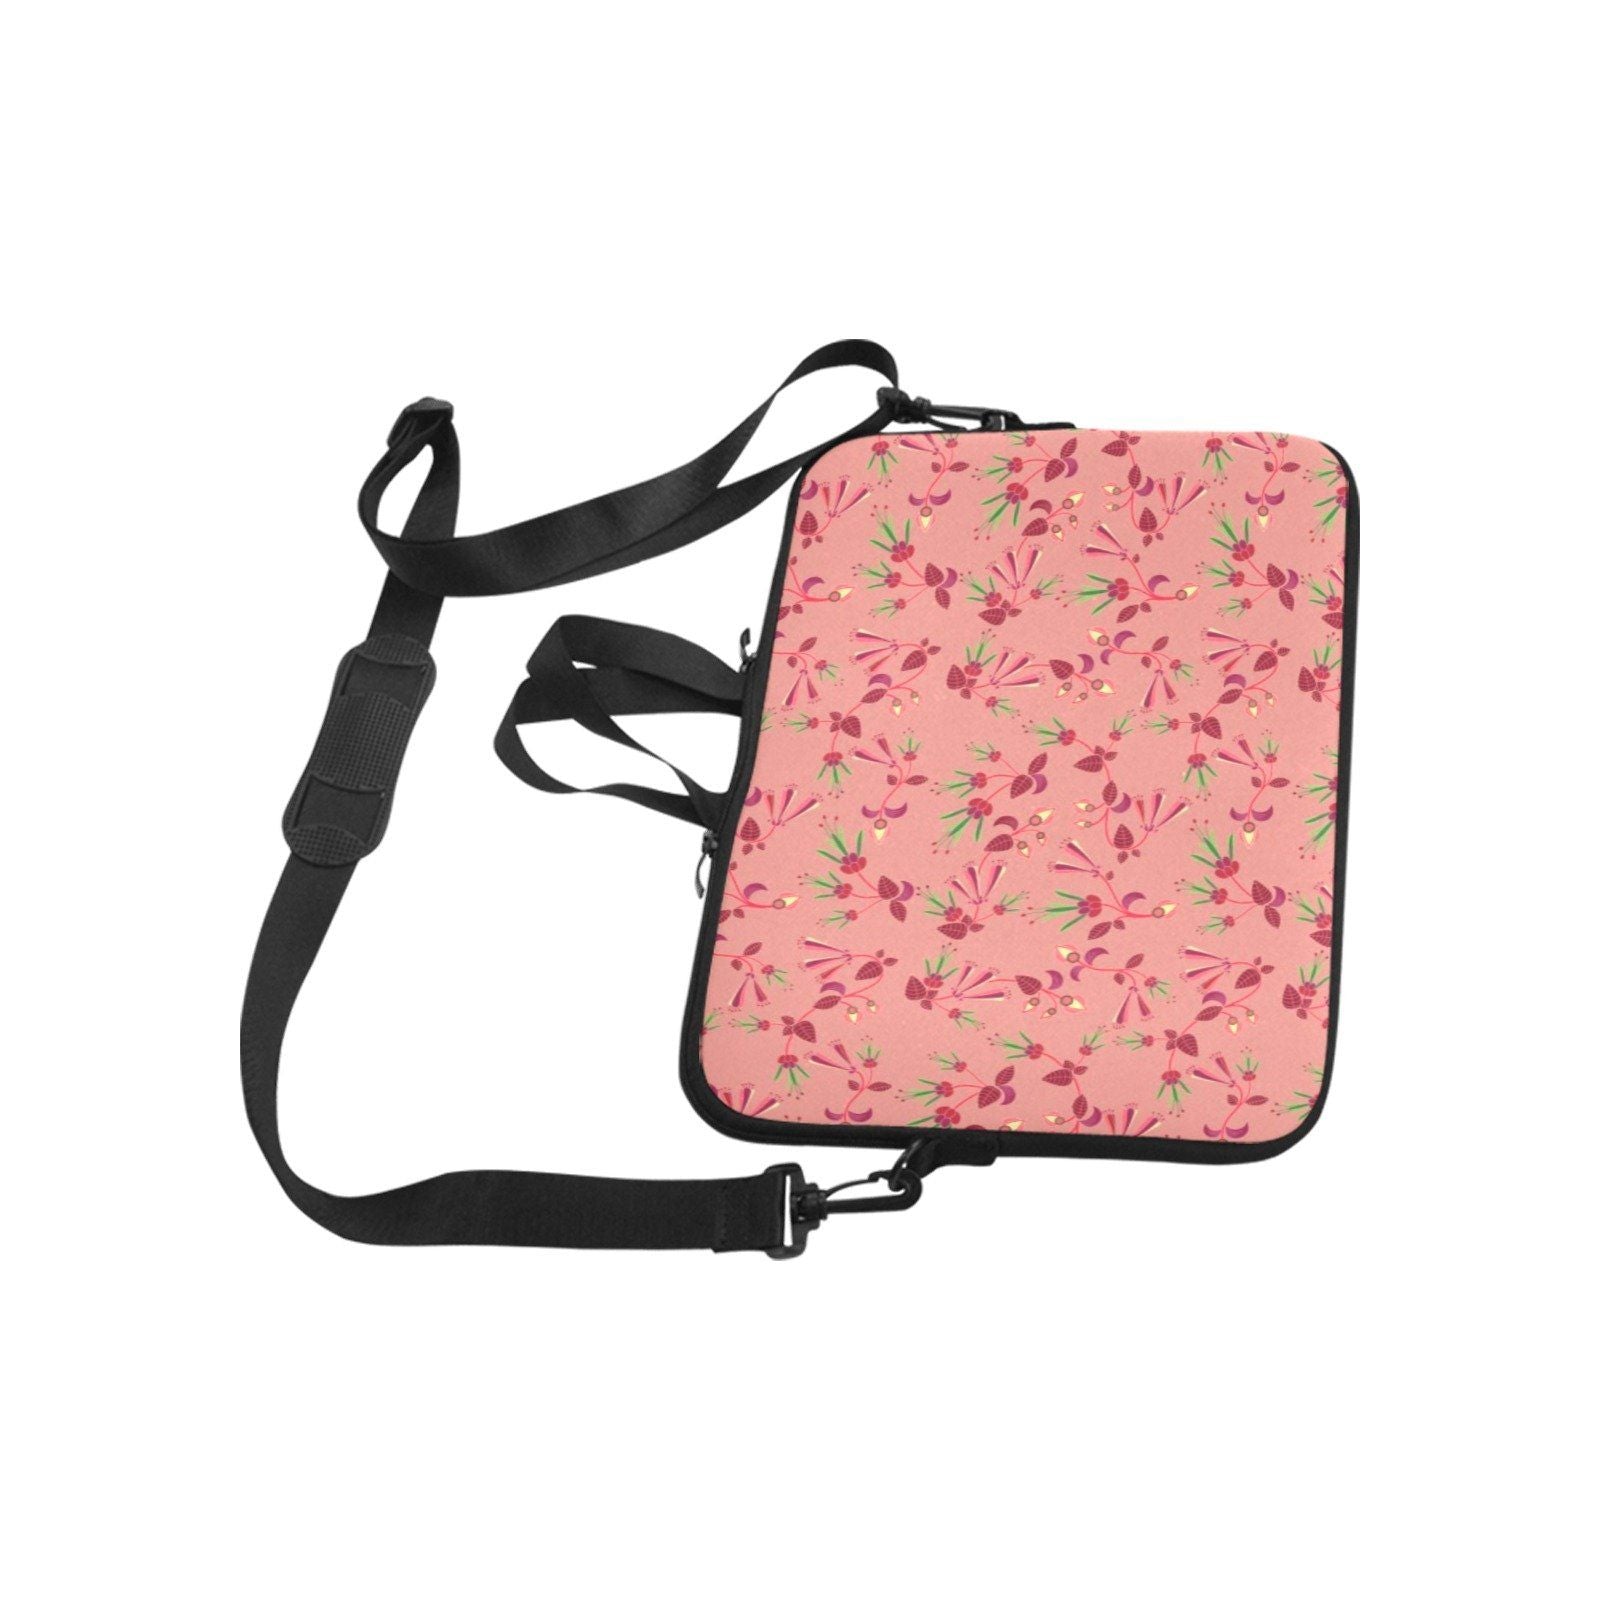 Swift Floral Peach Rouge Remix Laptop Handbags 11" bag e-joyer 